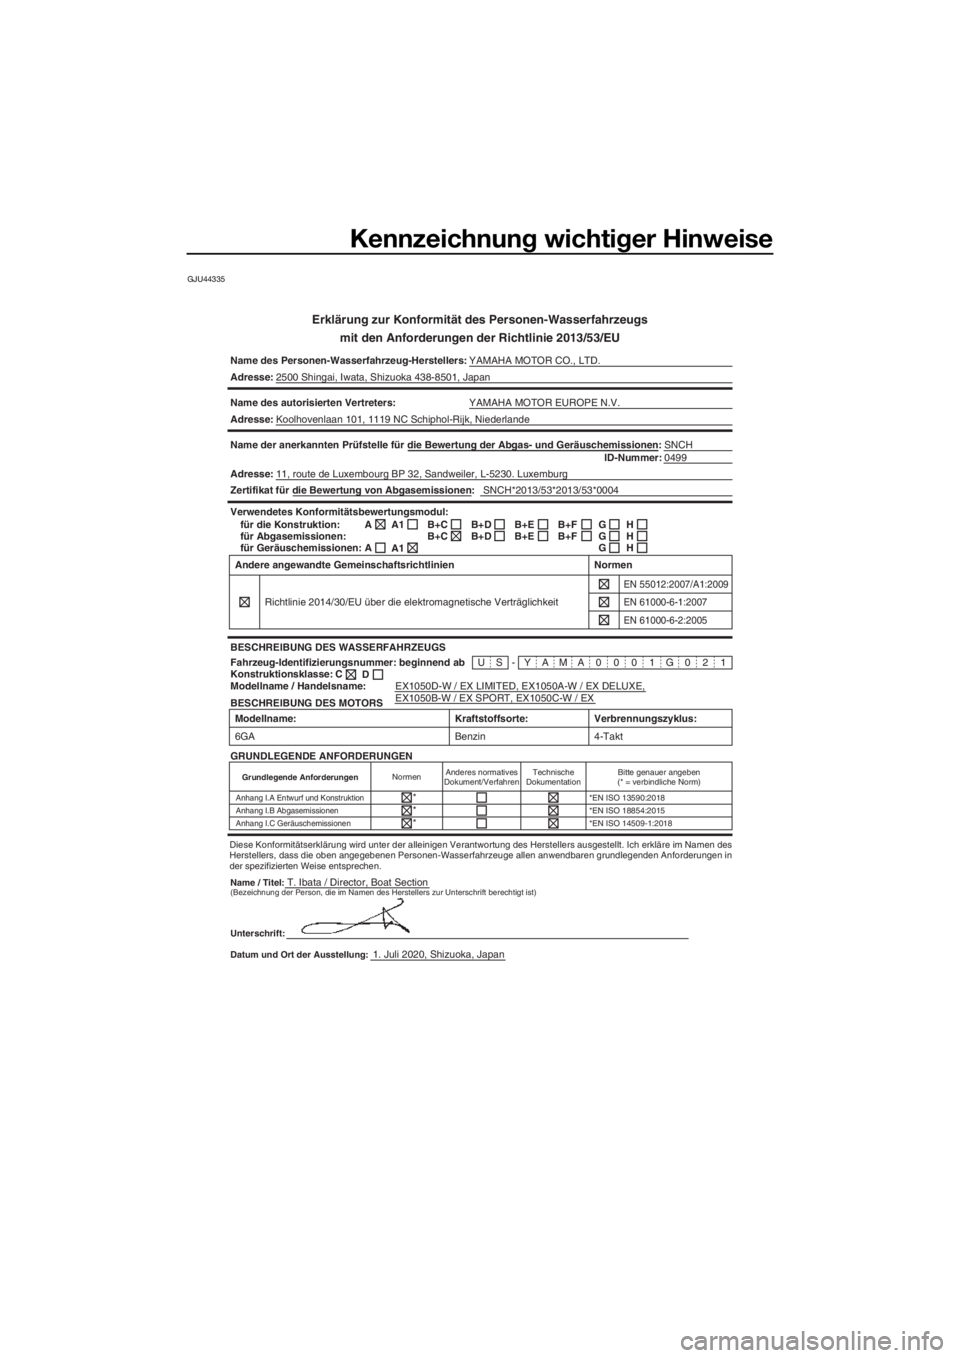 YAMAHA EX LIMITED 2021  Betriebsanleitungen (in German) Kennzeichnung wichtiger Hinweise
GJU44335
Erklärung zur Konformität des Personen-Wasserfahrzeugs
mit den Anforderun gen der Richtlinie 2013/53/EU
Name des Personen-Wasserfahrzeug-Herstellers: YAMAHA